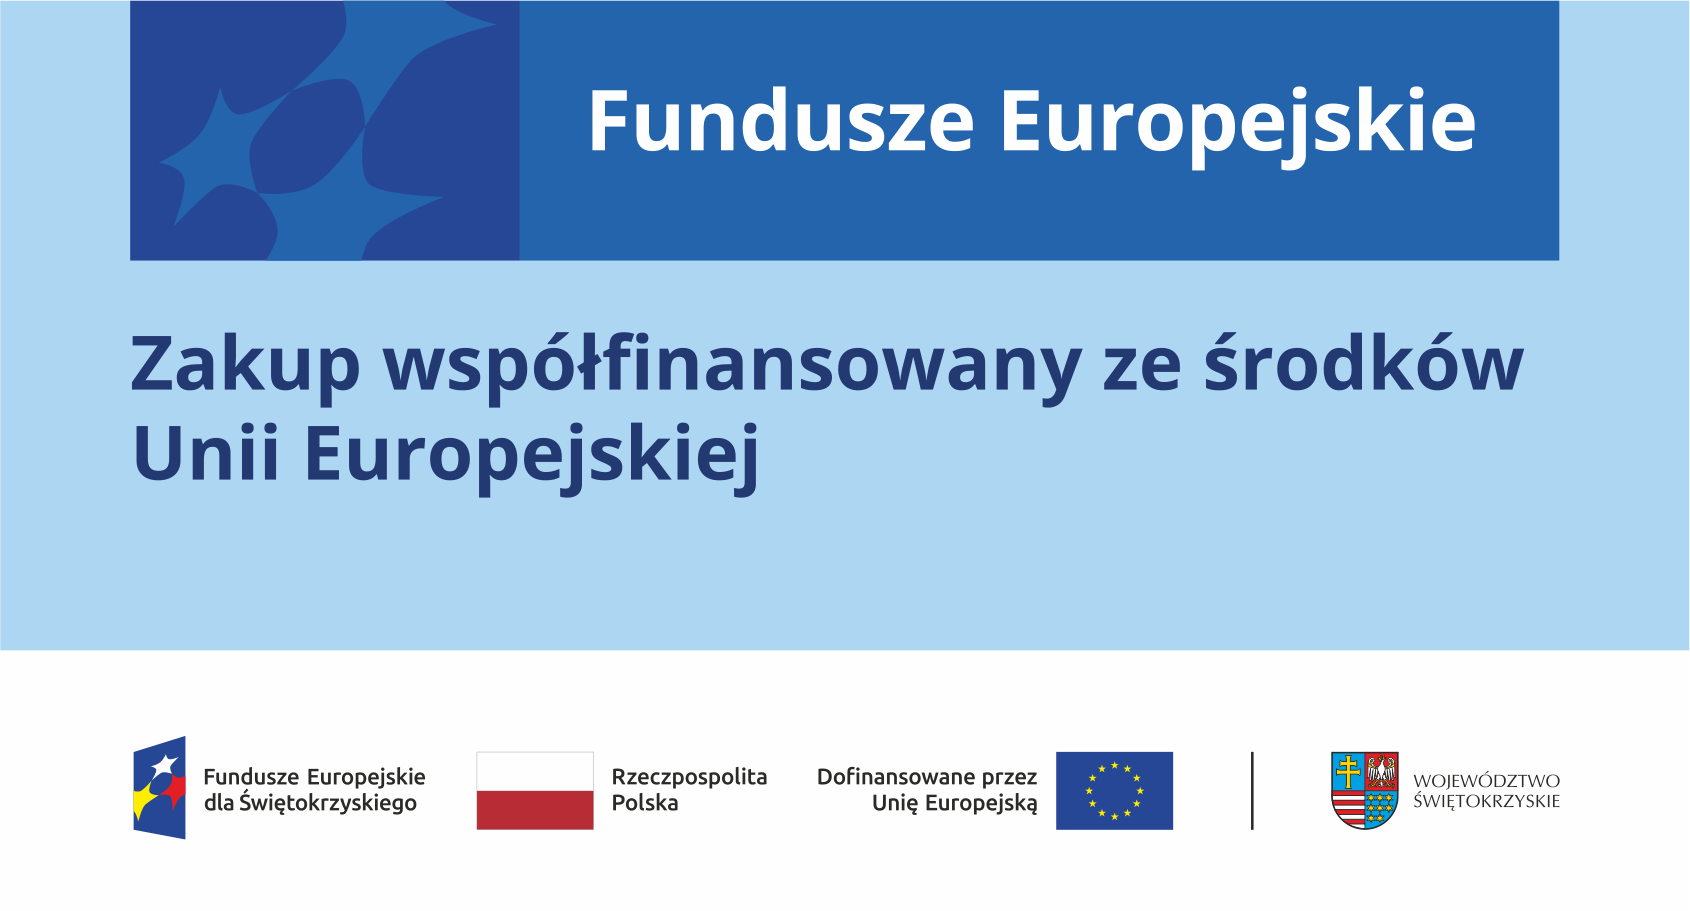 Naklejka Funduszy Europejskich dla Świętokrzyskiego 2021-2027 informująca o współfinansowaniu zakupu ze środków UE